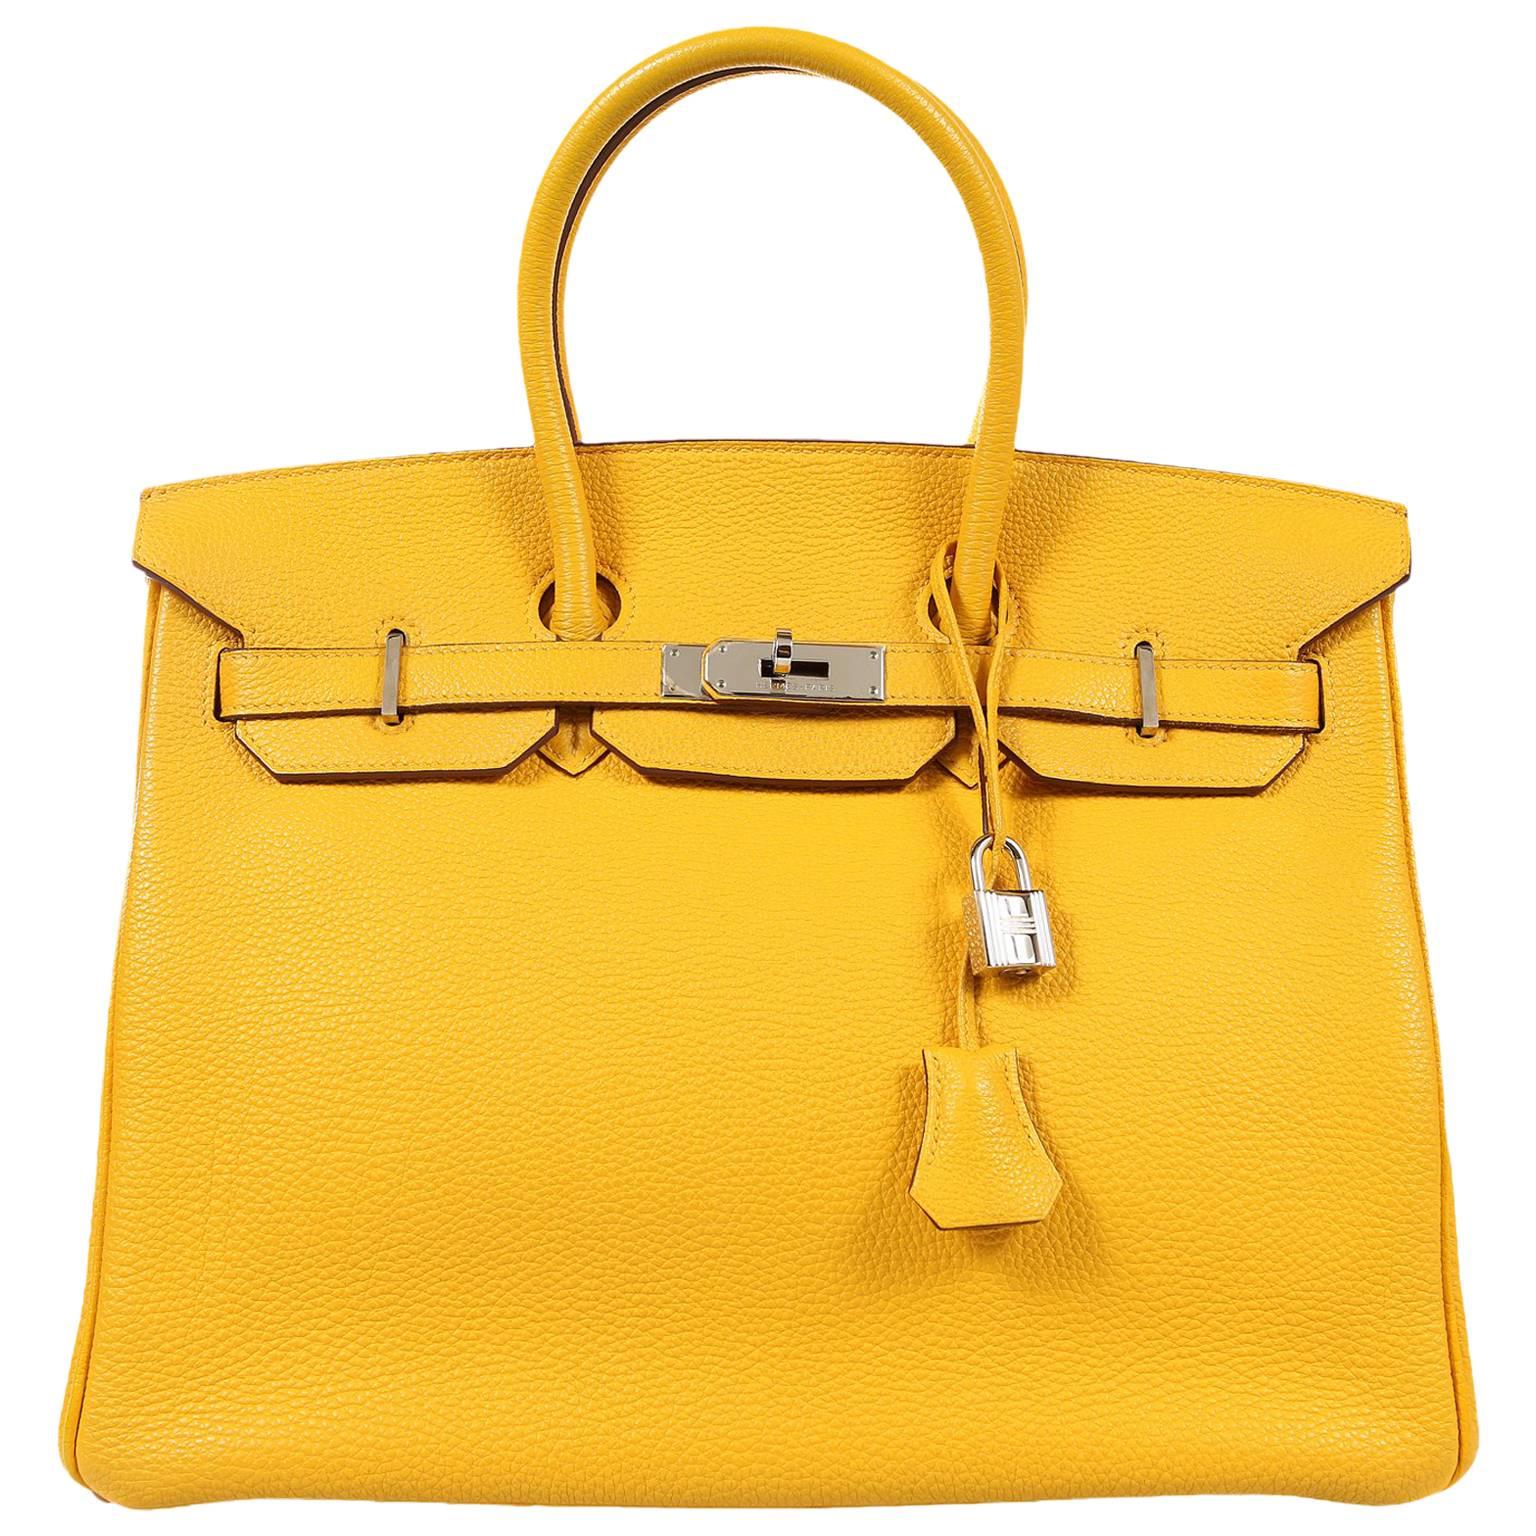 Hermès Soleil Yellow Togo 35cm Birkin Bag with Palladium